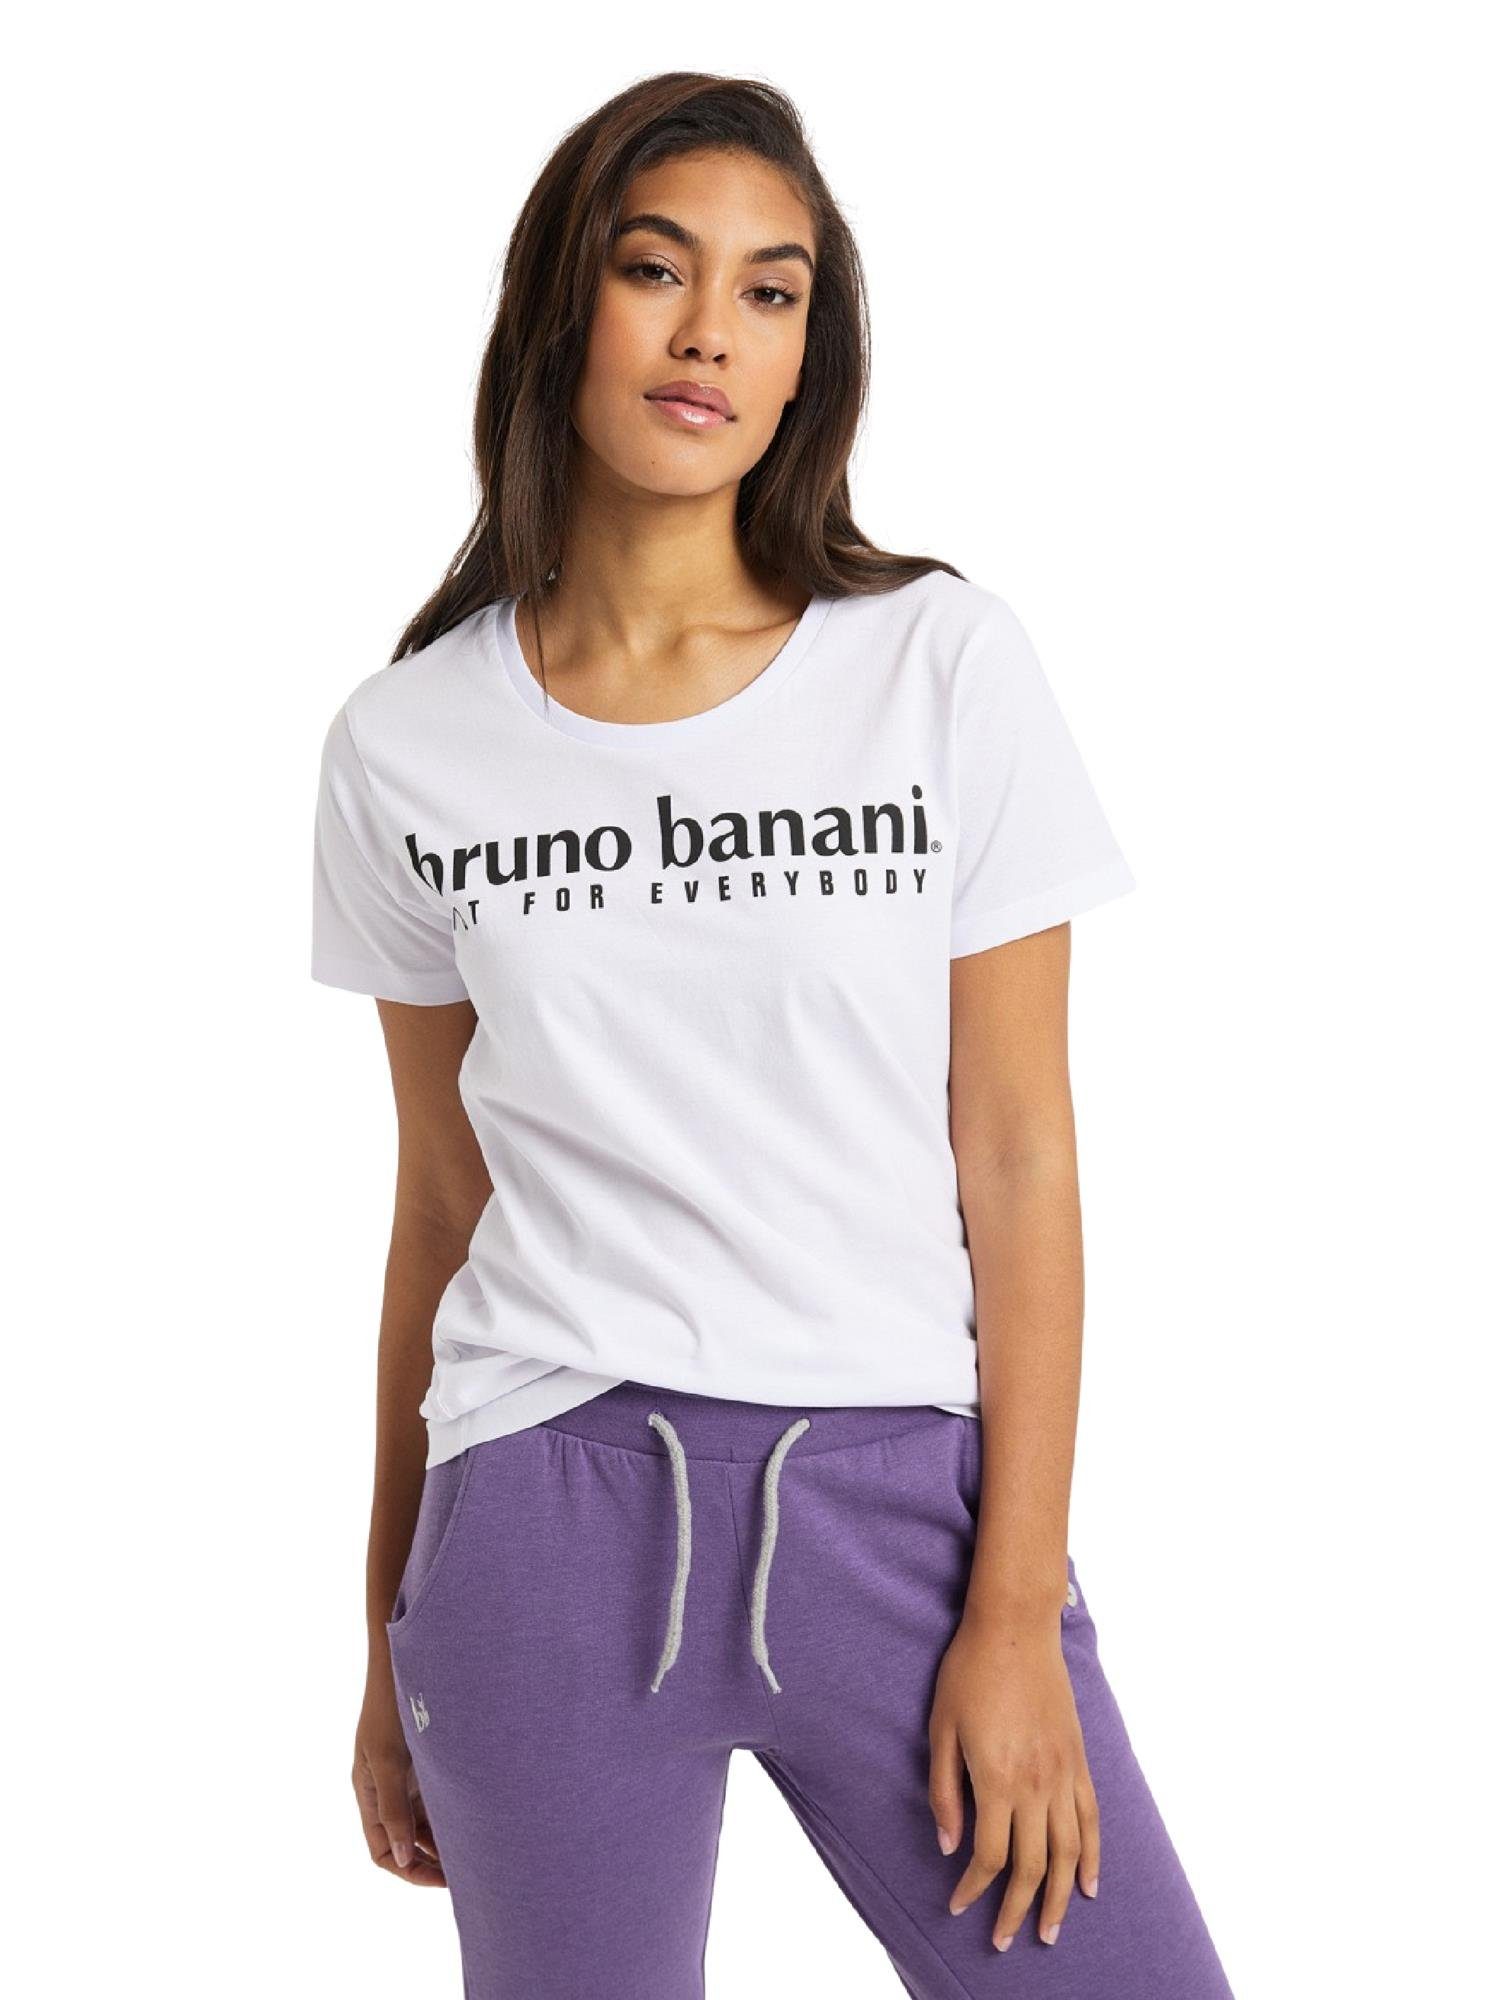 BLACK T-Shirt Banani Bruno